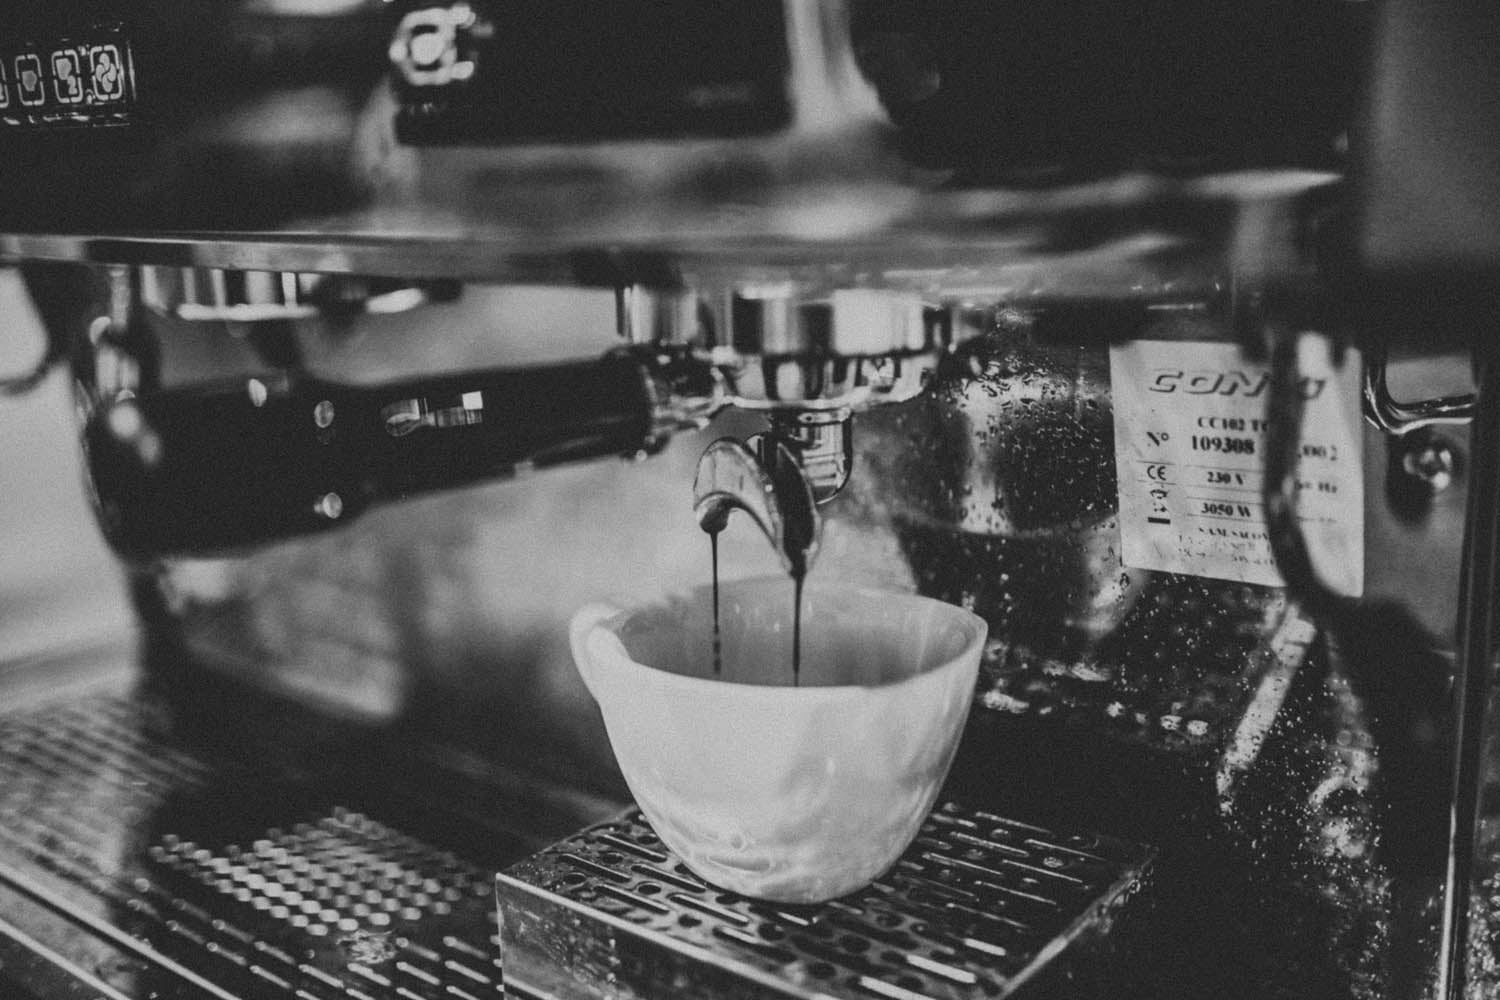 espresso Pour on the espresso machine